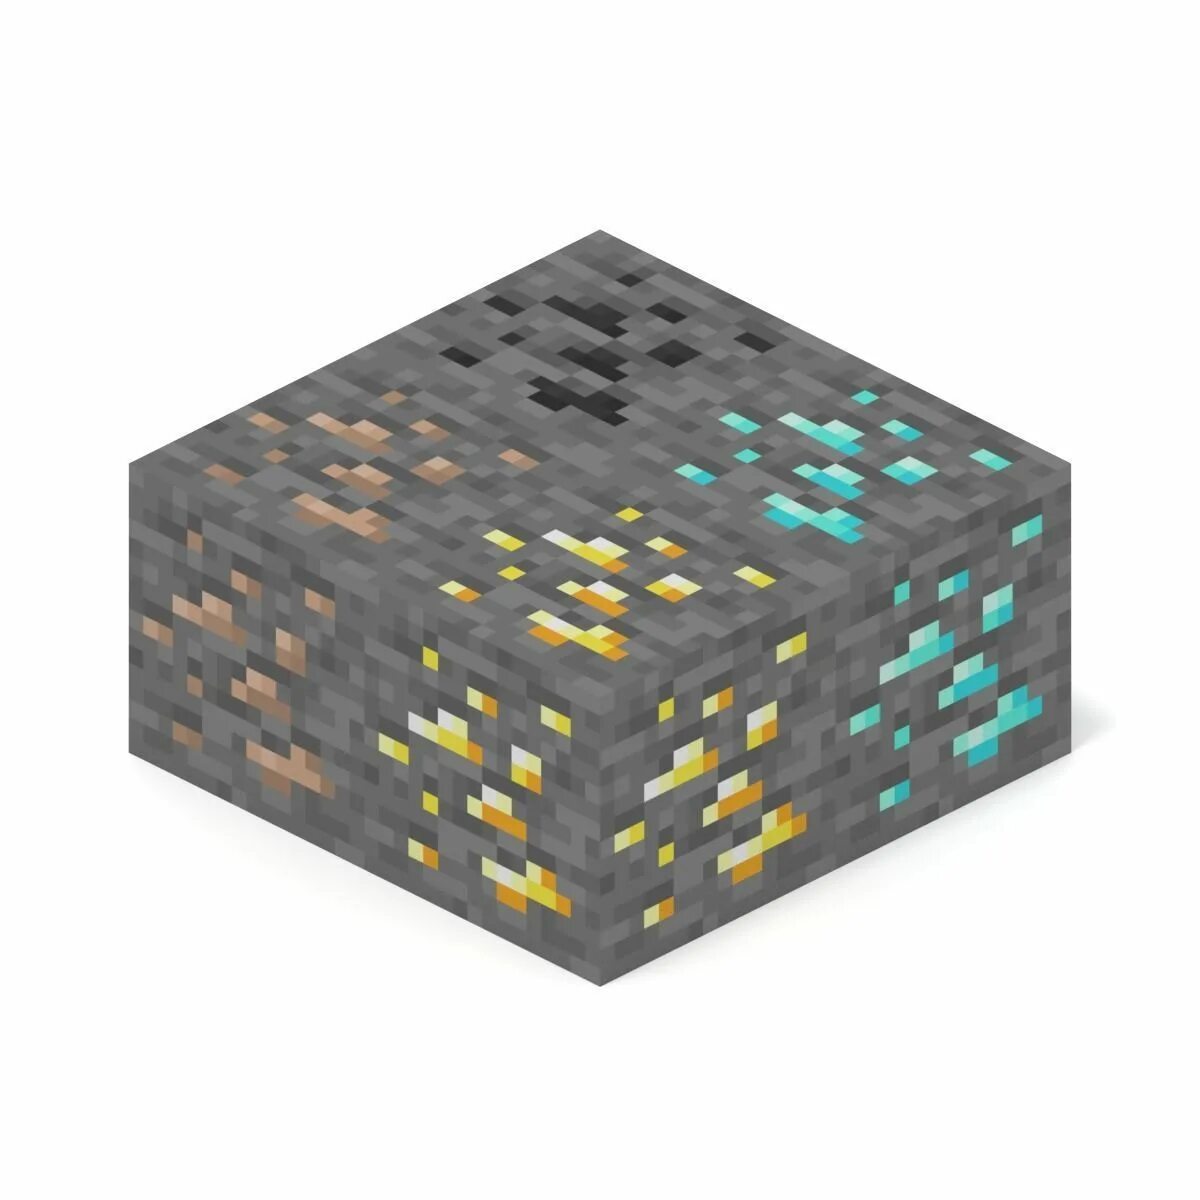 Minecraft blocks. Алмазная руда майнкрафт 1.17. Блок алмаза майнкрафт. Блок майнкрафт Алмаз блок. Блок алмазной руды майнкрафт из 1.18.